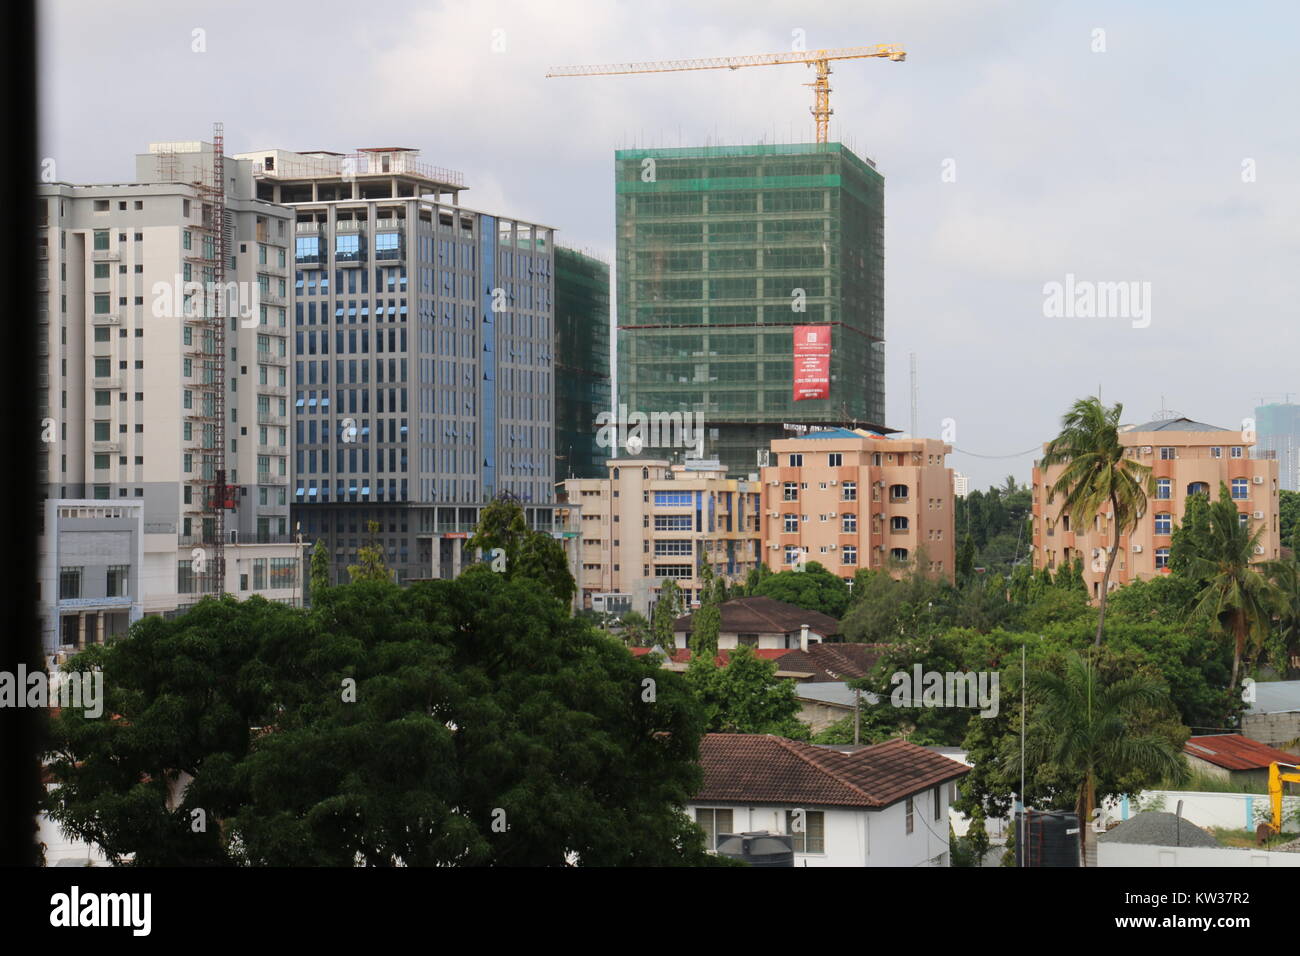 Victoria Dar es salaam, Tanzania Stock Photo